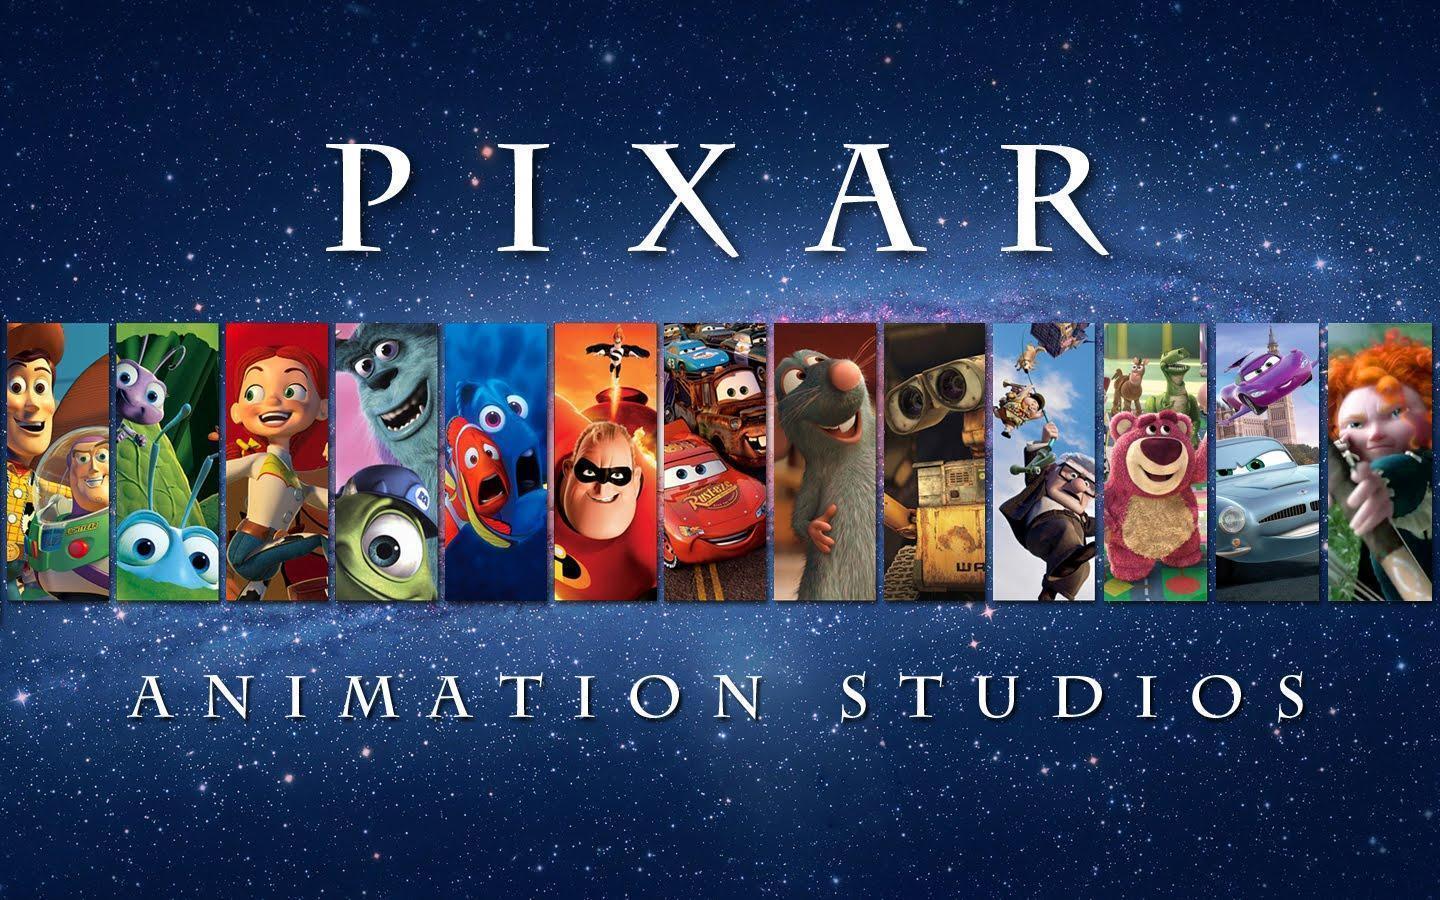 Disney Pixar Wallpapers Wallpaper Cave HD Wallpapers Download Free Images Wallpaper [wallpaper981.blogspot.com]